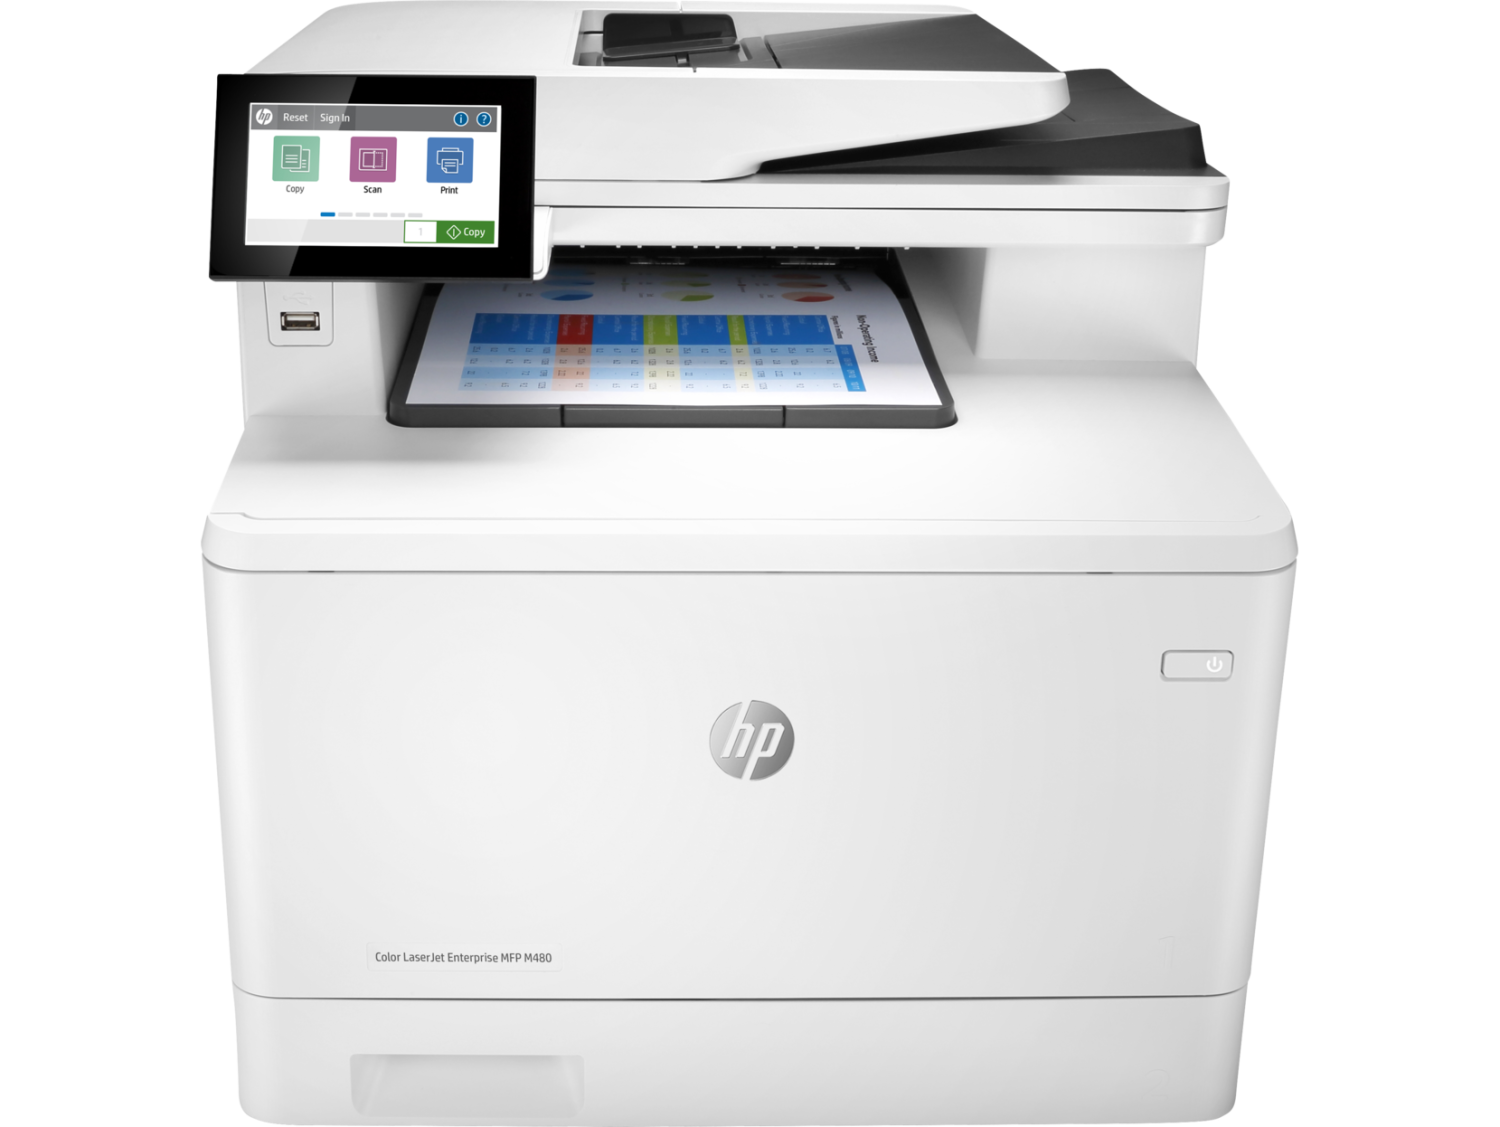 HP Color LaserJet Enterprise MFP M480f - Multifunction printer - color